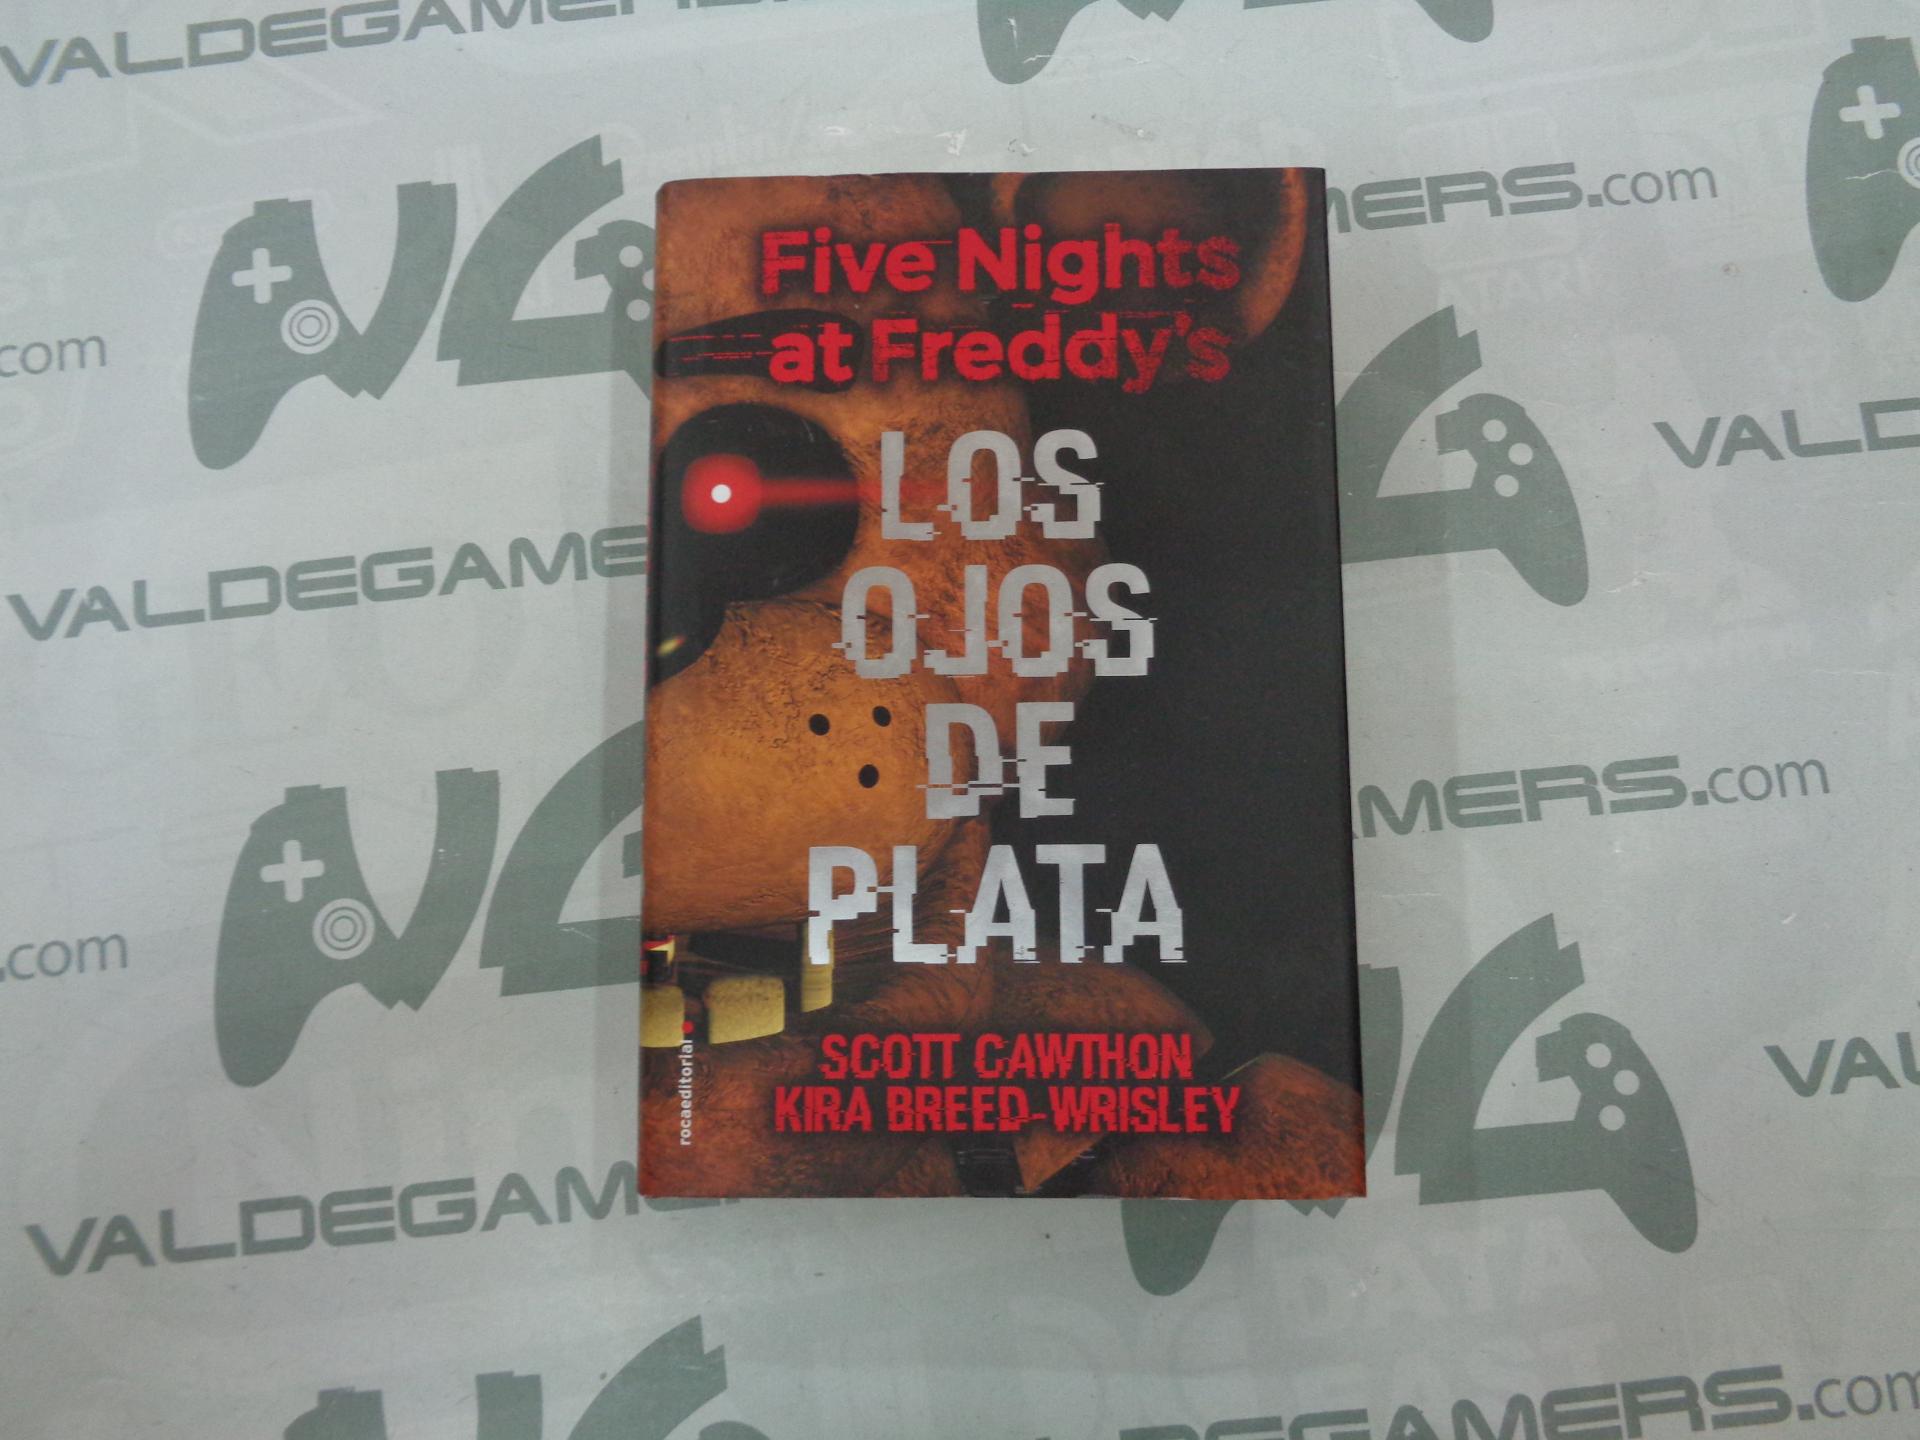 FIVE NIGHTS AT FREDDY'S. LOS OJOS DE PLATA